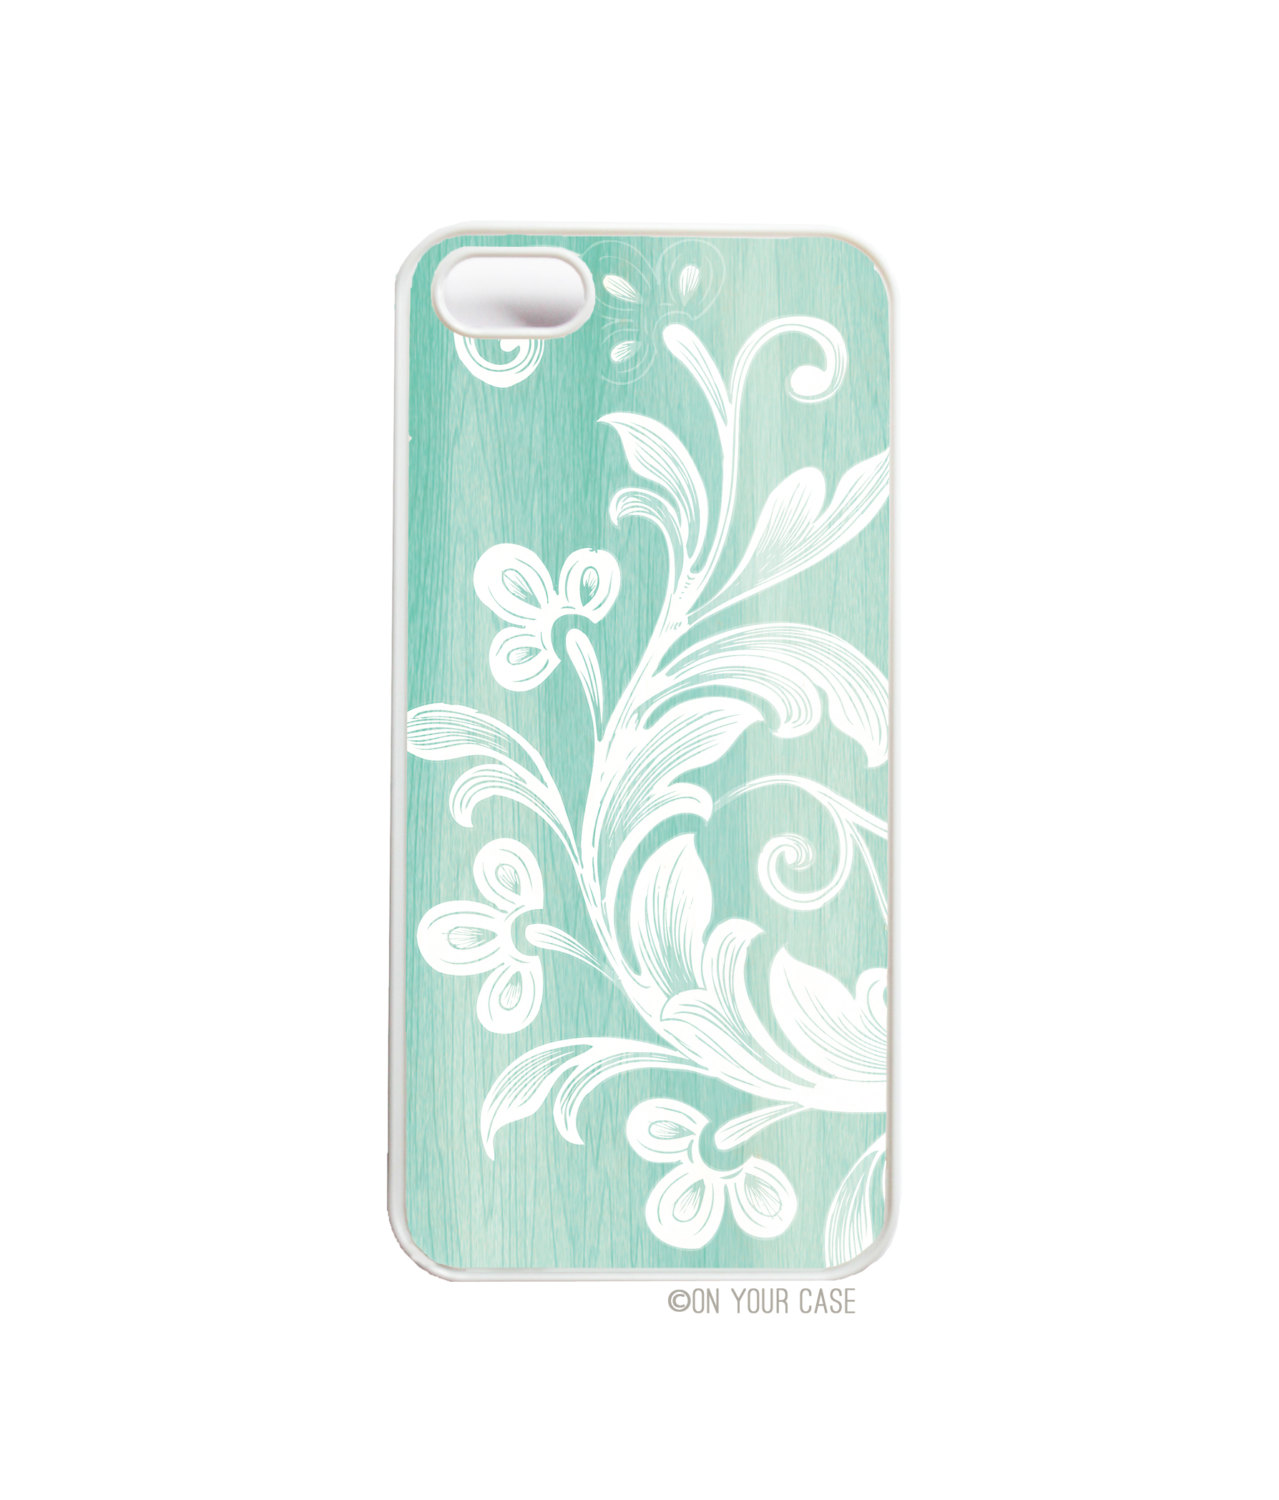 Iphone 5 Case Wood Grain Floral Aquamarine